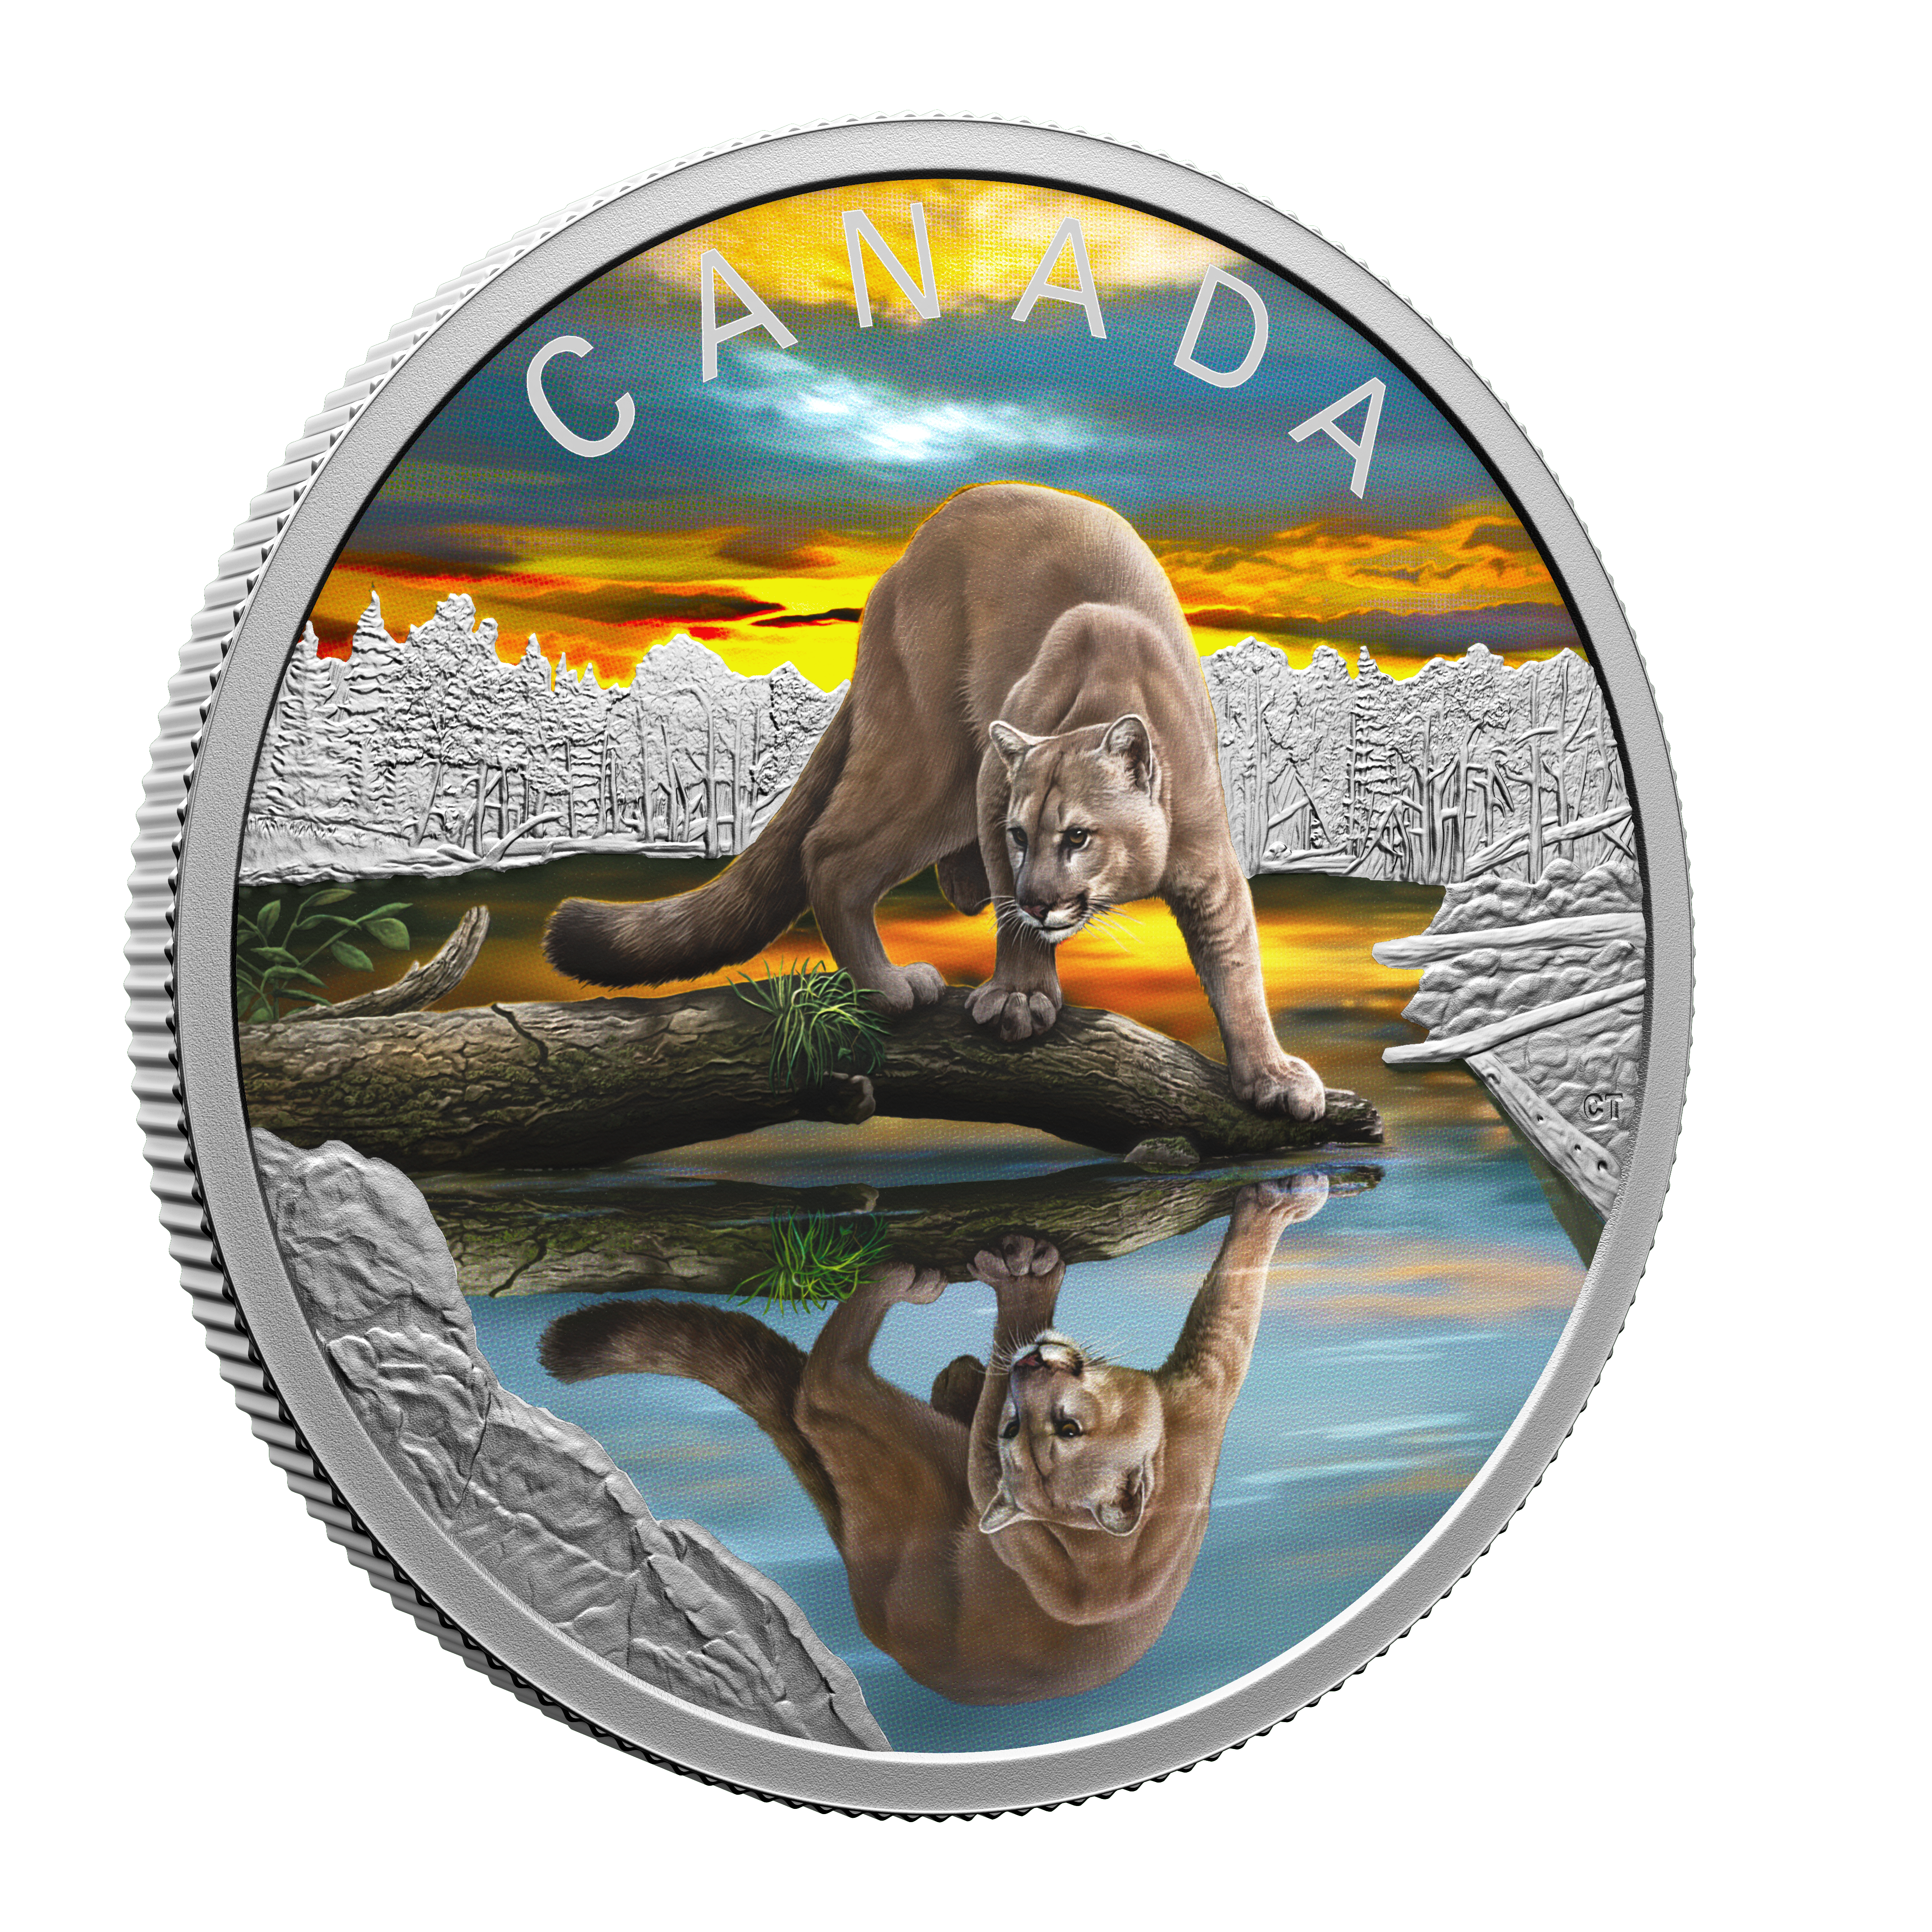 COUGAR Wildlife reflections 1 Oz Silver Coin $20 Canada